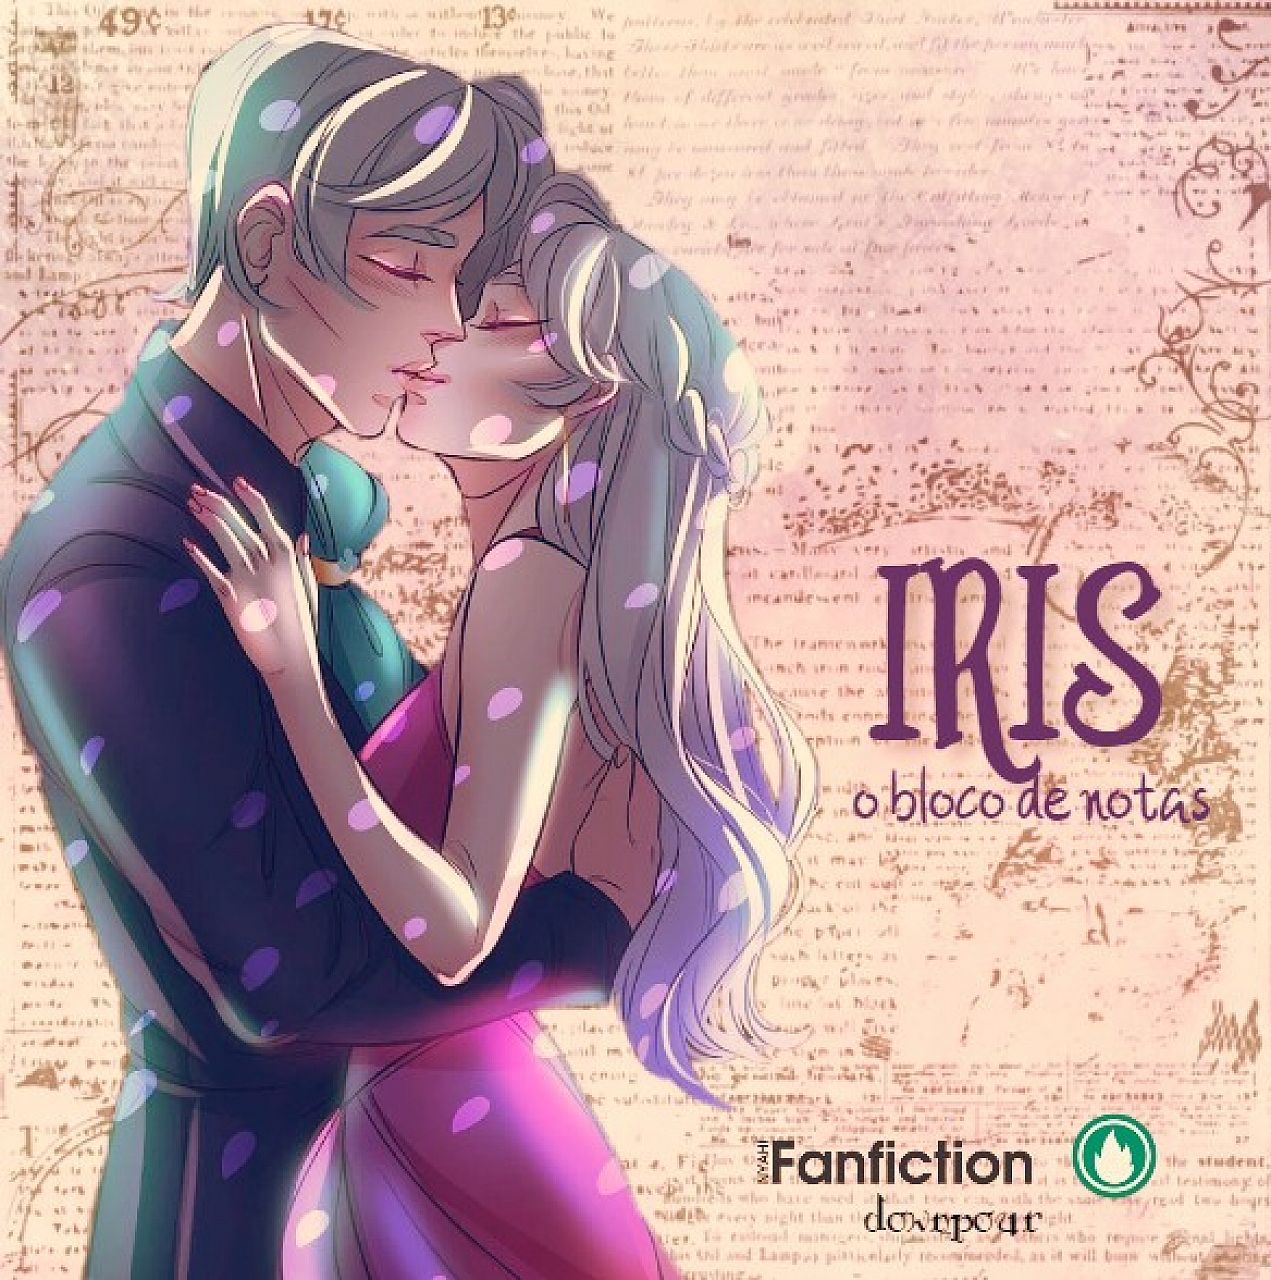 Iris - O Bloco de Notas